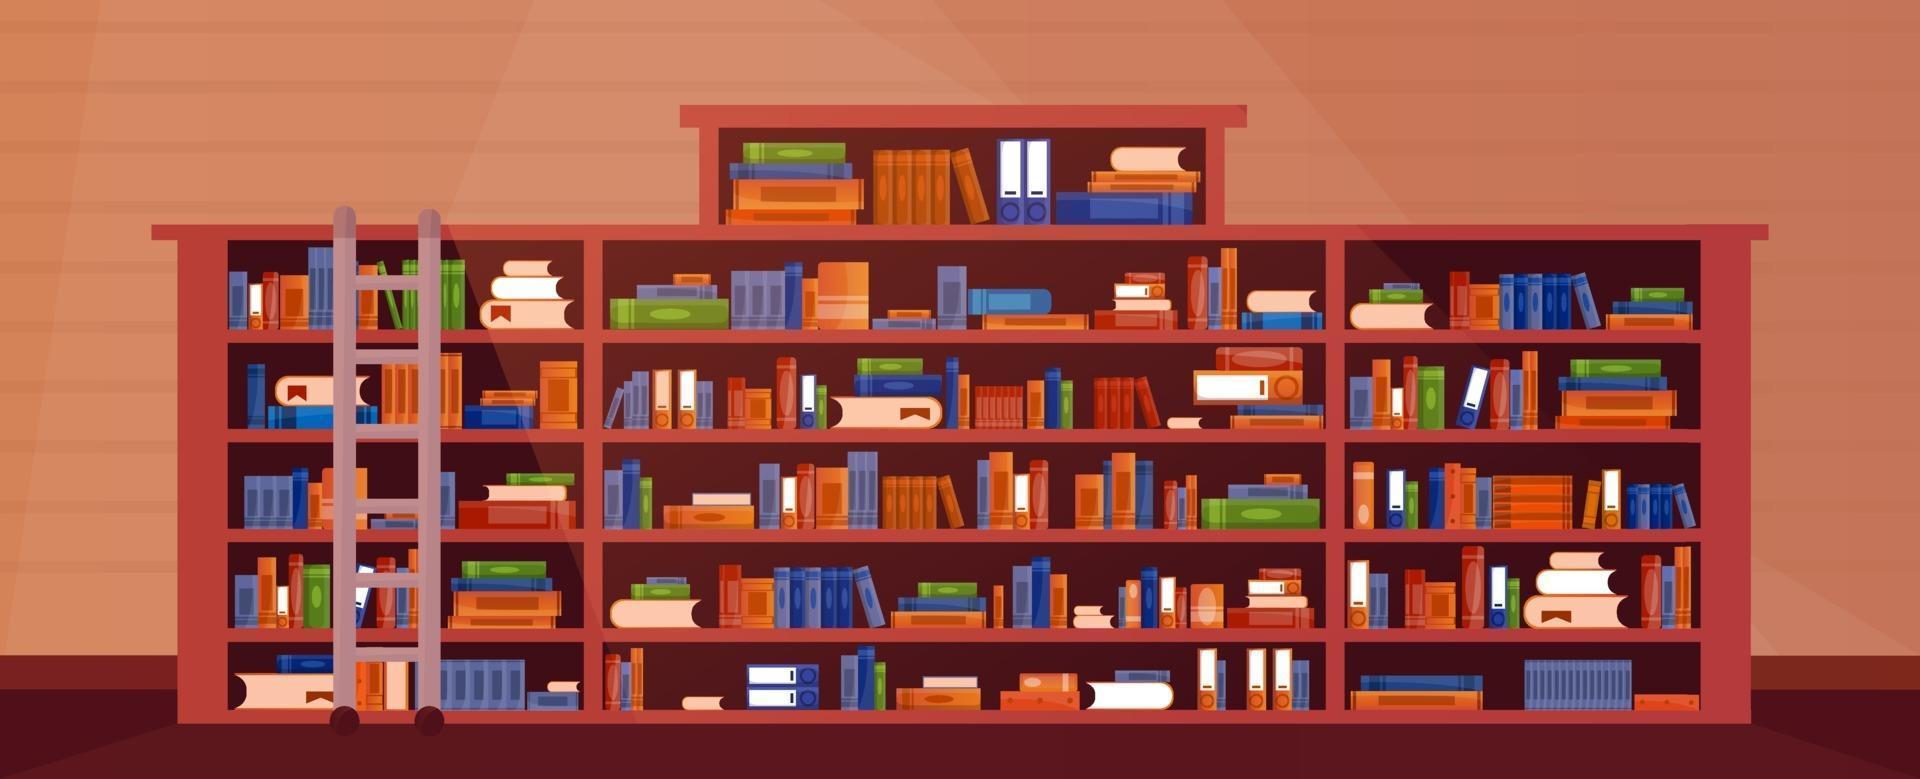 grande bibliothèque avec livres avec escalier, échelle. intérieur d'étagère de livre de bibliothèque. livres et connaissances. vecteur